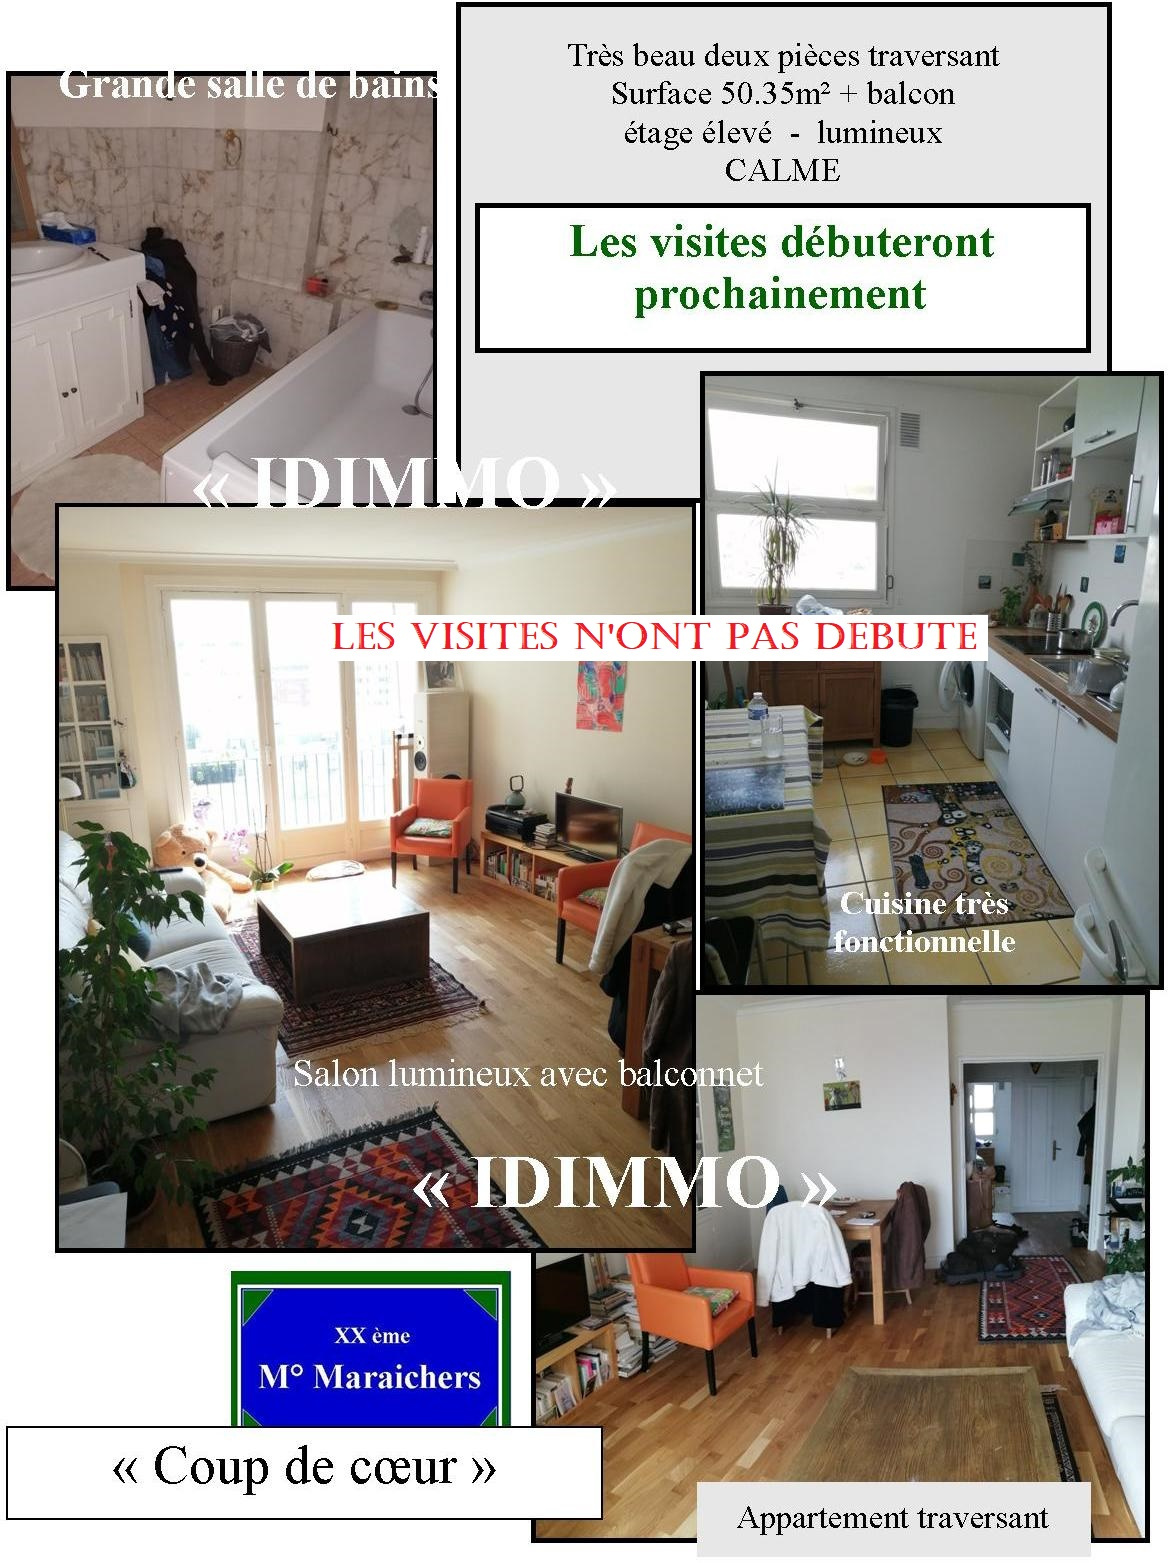 Vente Appartement 50m² 2 Pièces à Paris (75012) - Idimmo